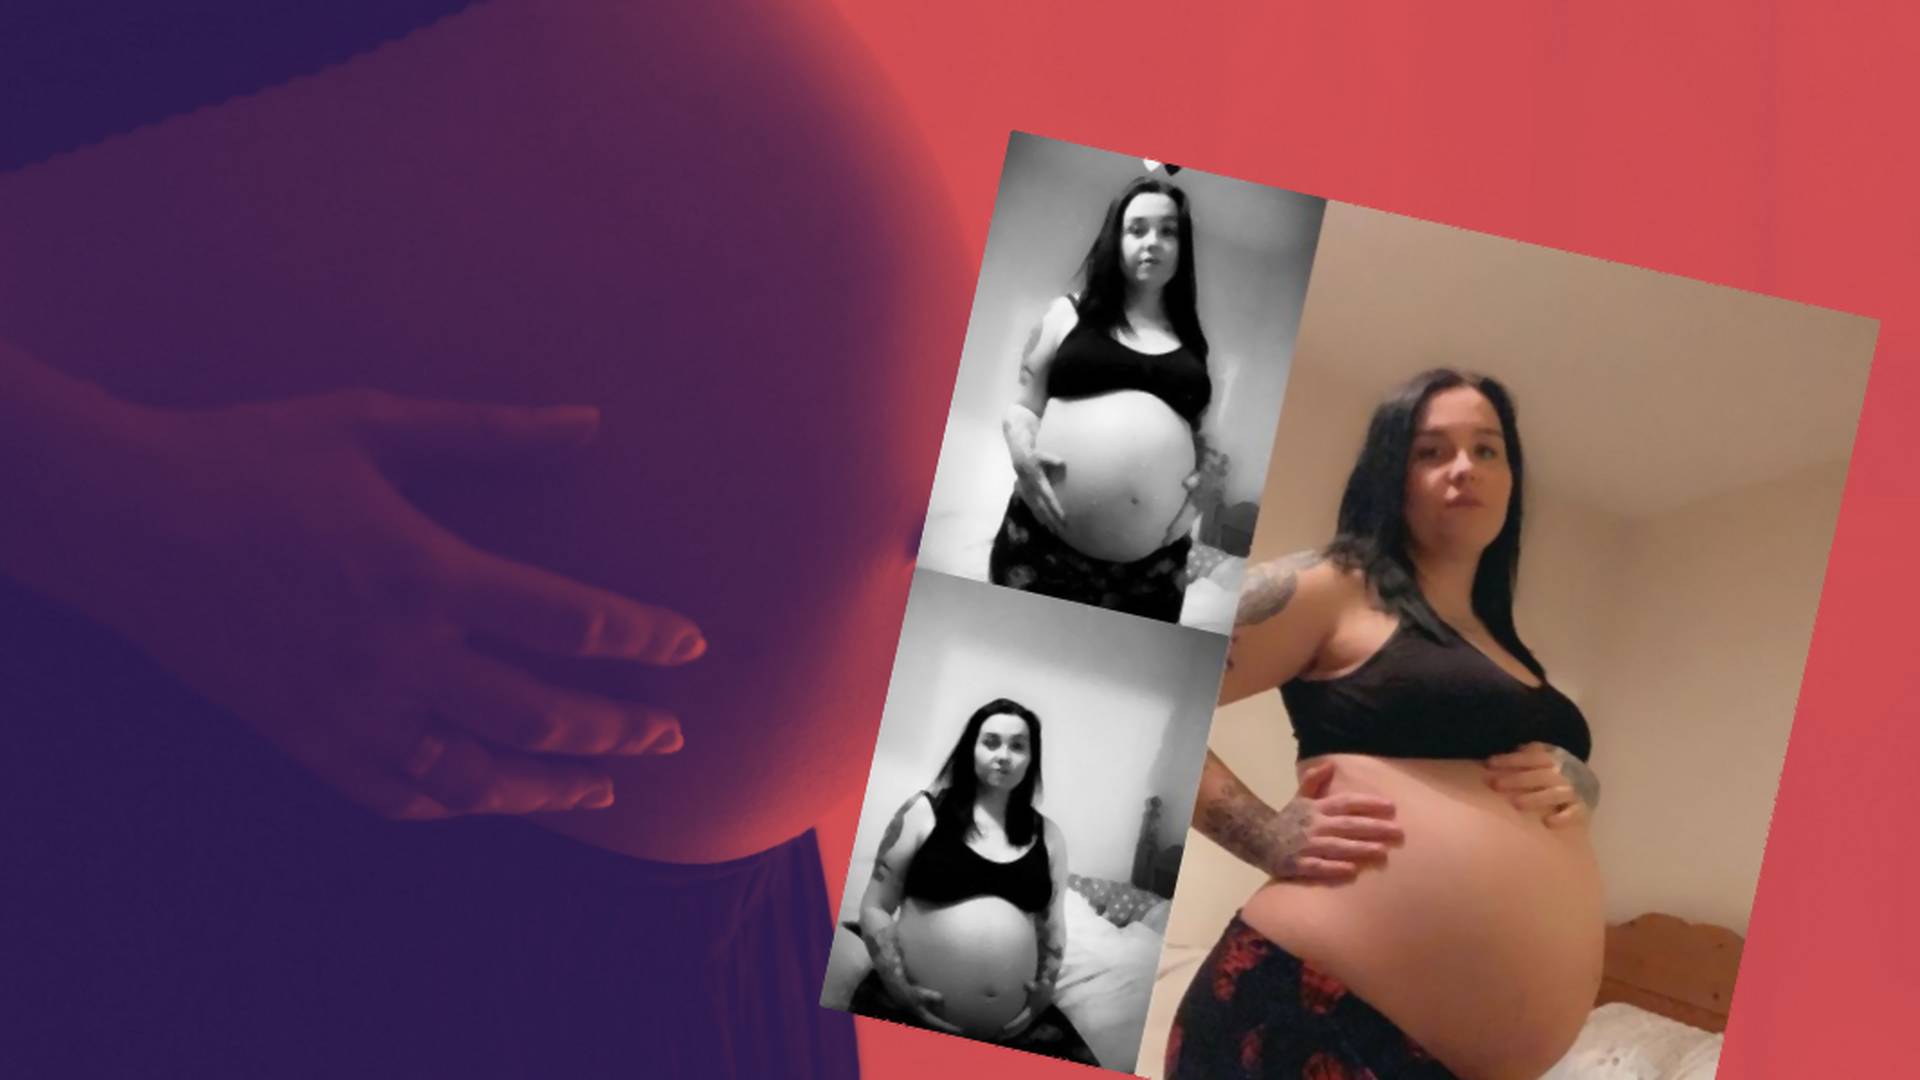 Zaszła w ciążę z trojaczkami, choć stosowała antykoncepcję. Jak to możliwe?